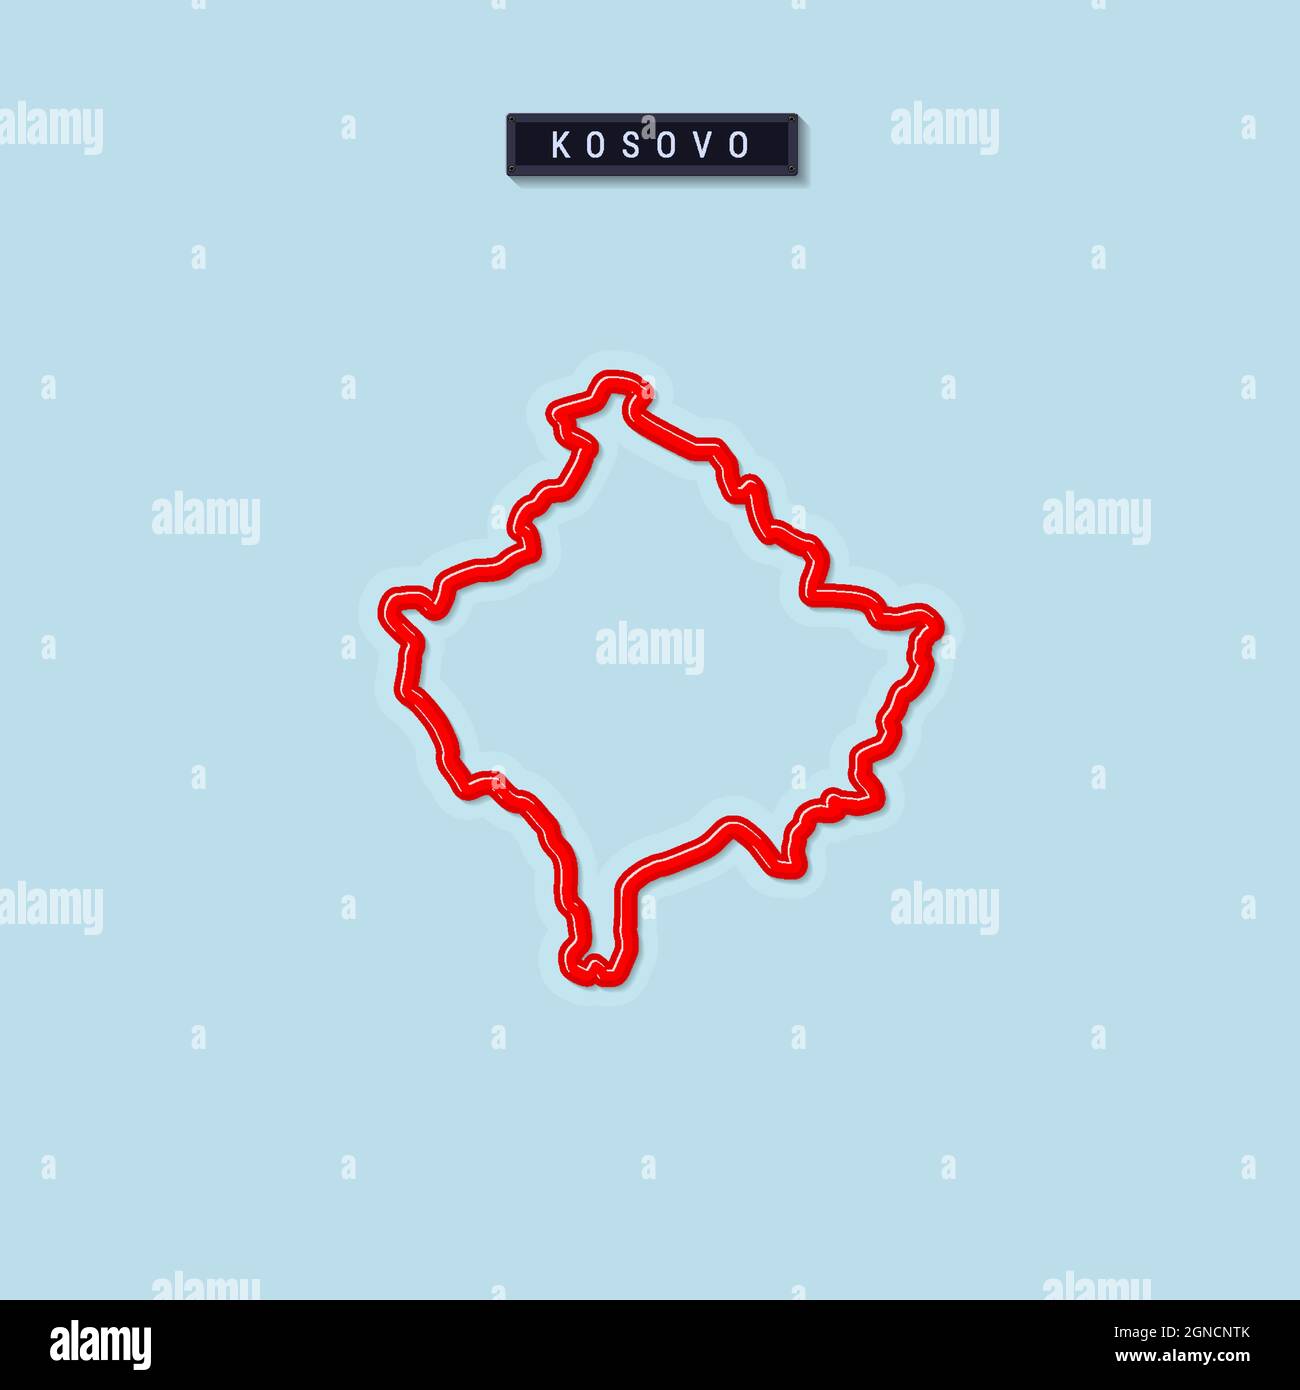 Mappa del Kosovo in grassetto. Bordo rosso lucido con ombra morbida. Targhetta con il nome del paese. Illustrazione vettoriale. Illustrazione Vettoriale